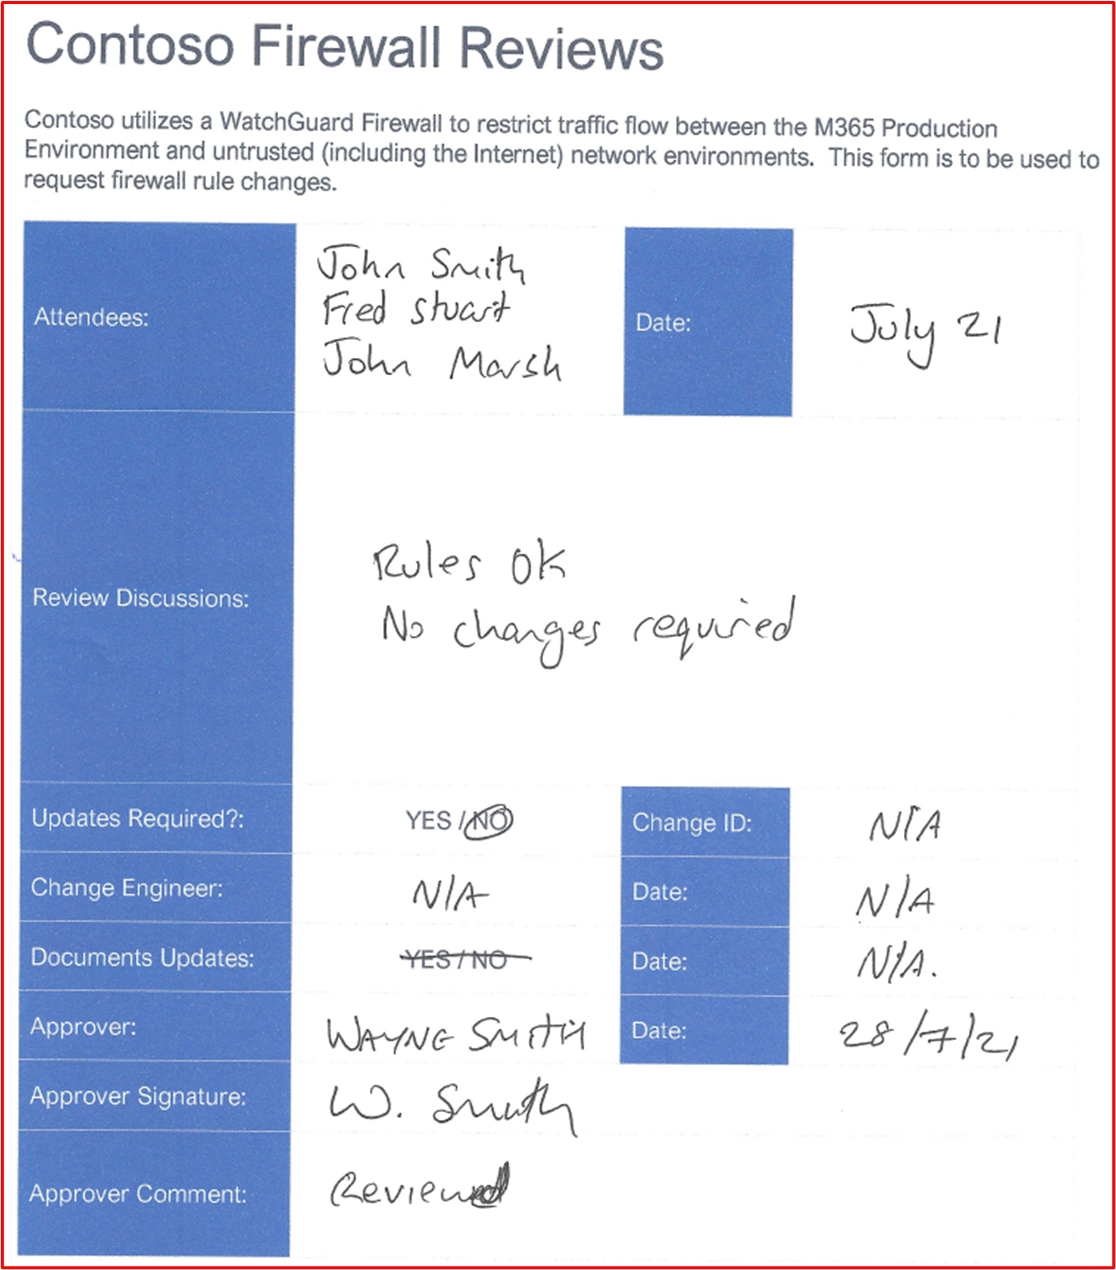 captura de pantalla que muestra las pruebas de una revisión del firewall que tiene lugar en julio de 2021.